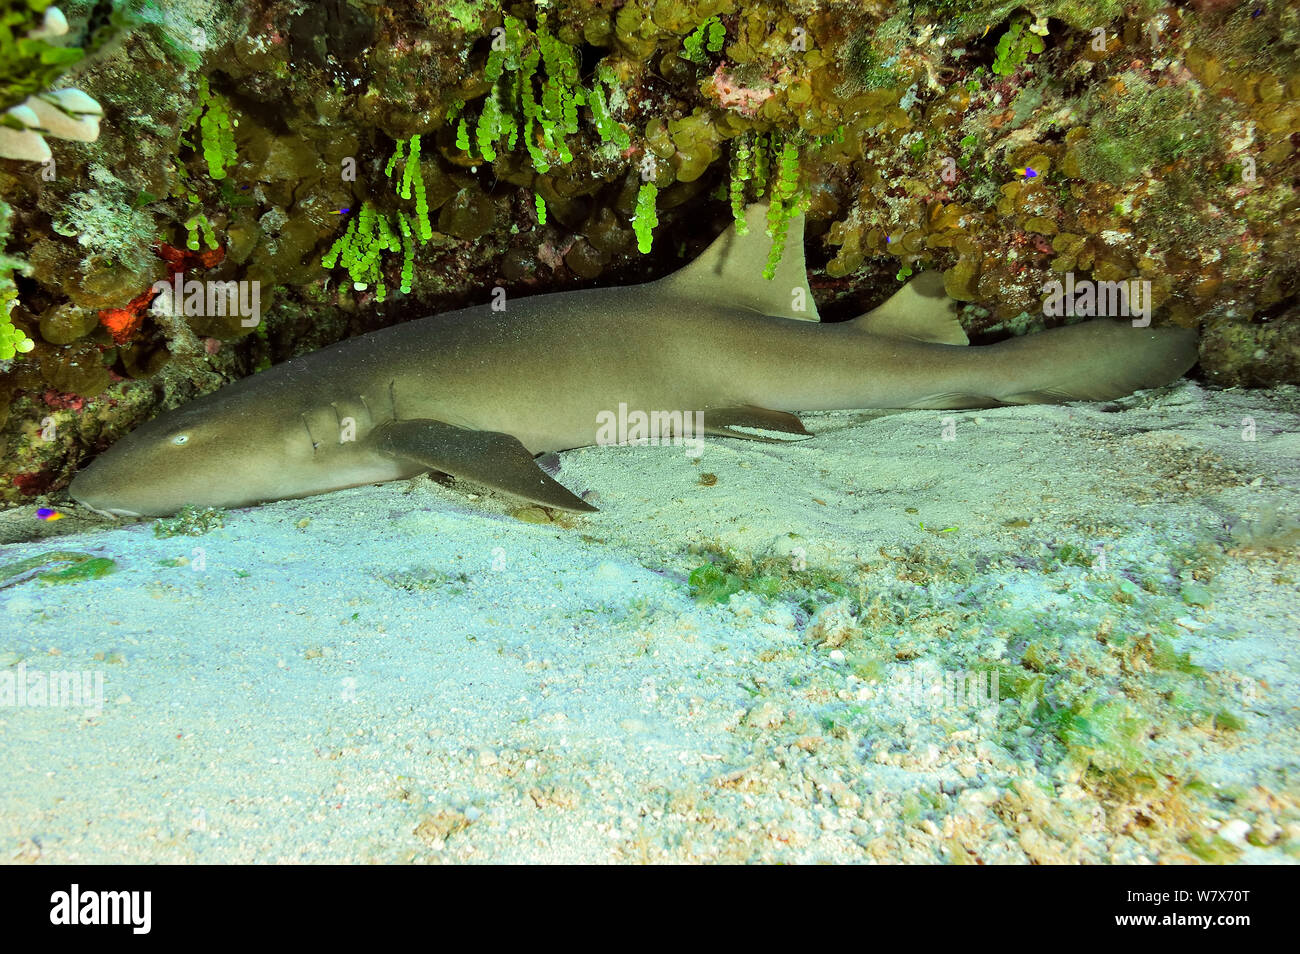 Requin nourrice de l'Atlantique (Ginglymostoma cirratum), l'île de San Salvador / Colombus Island, aux Bahamas. Des Caraïbes. Banque D'Images